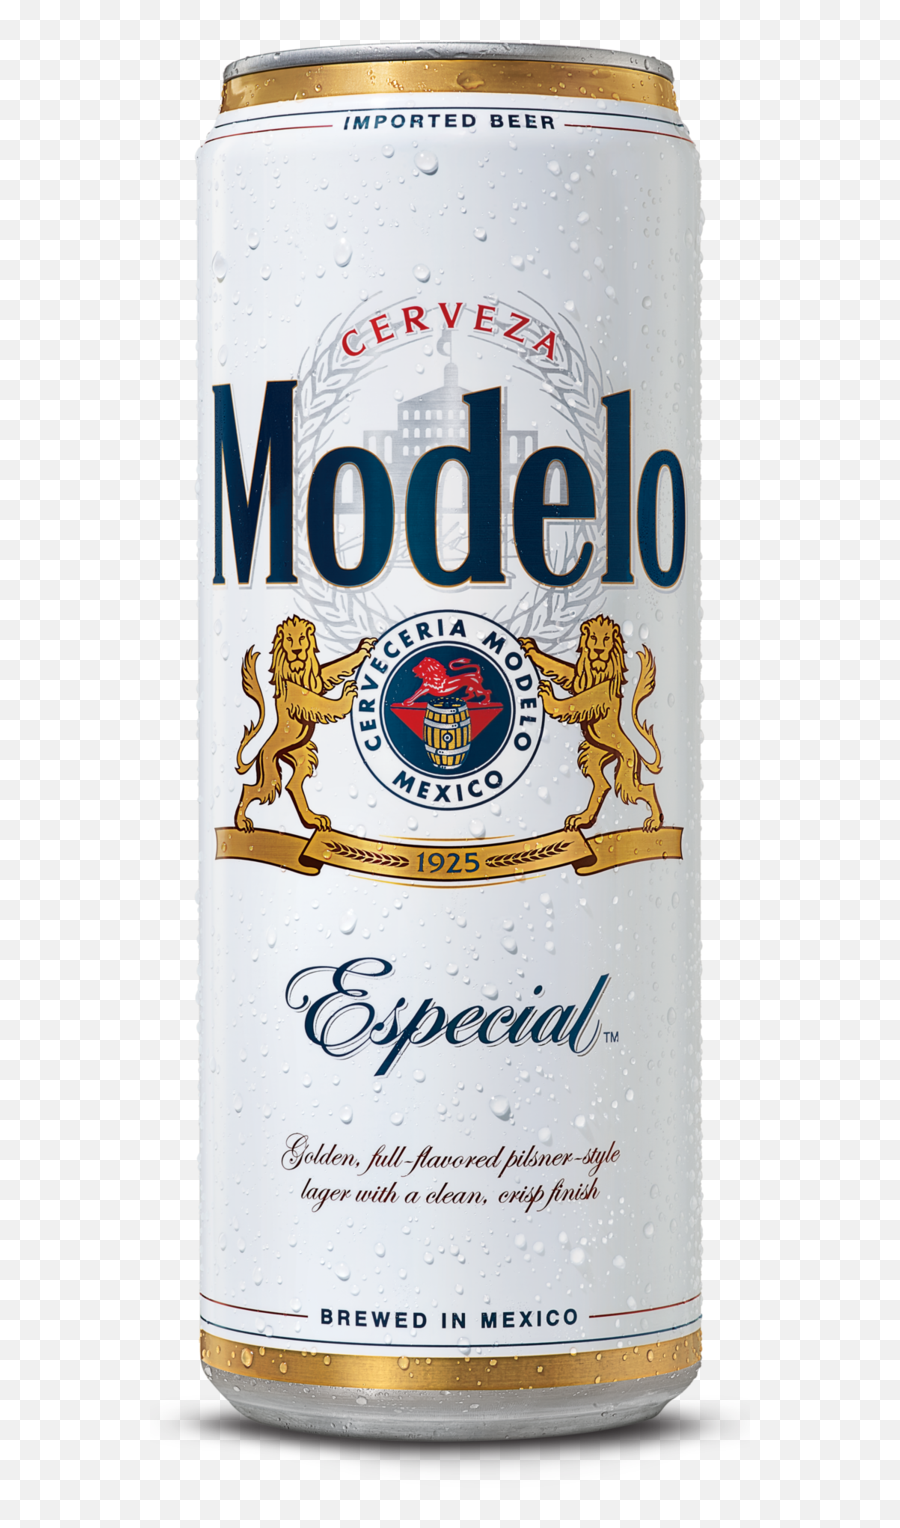 Modelo Especial 24oz Cans - Modelo Especial Png,Modelo Beer Logo